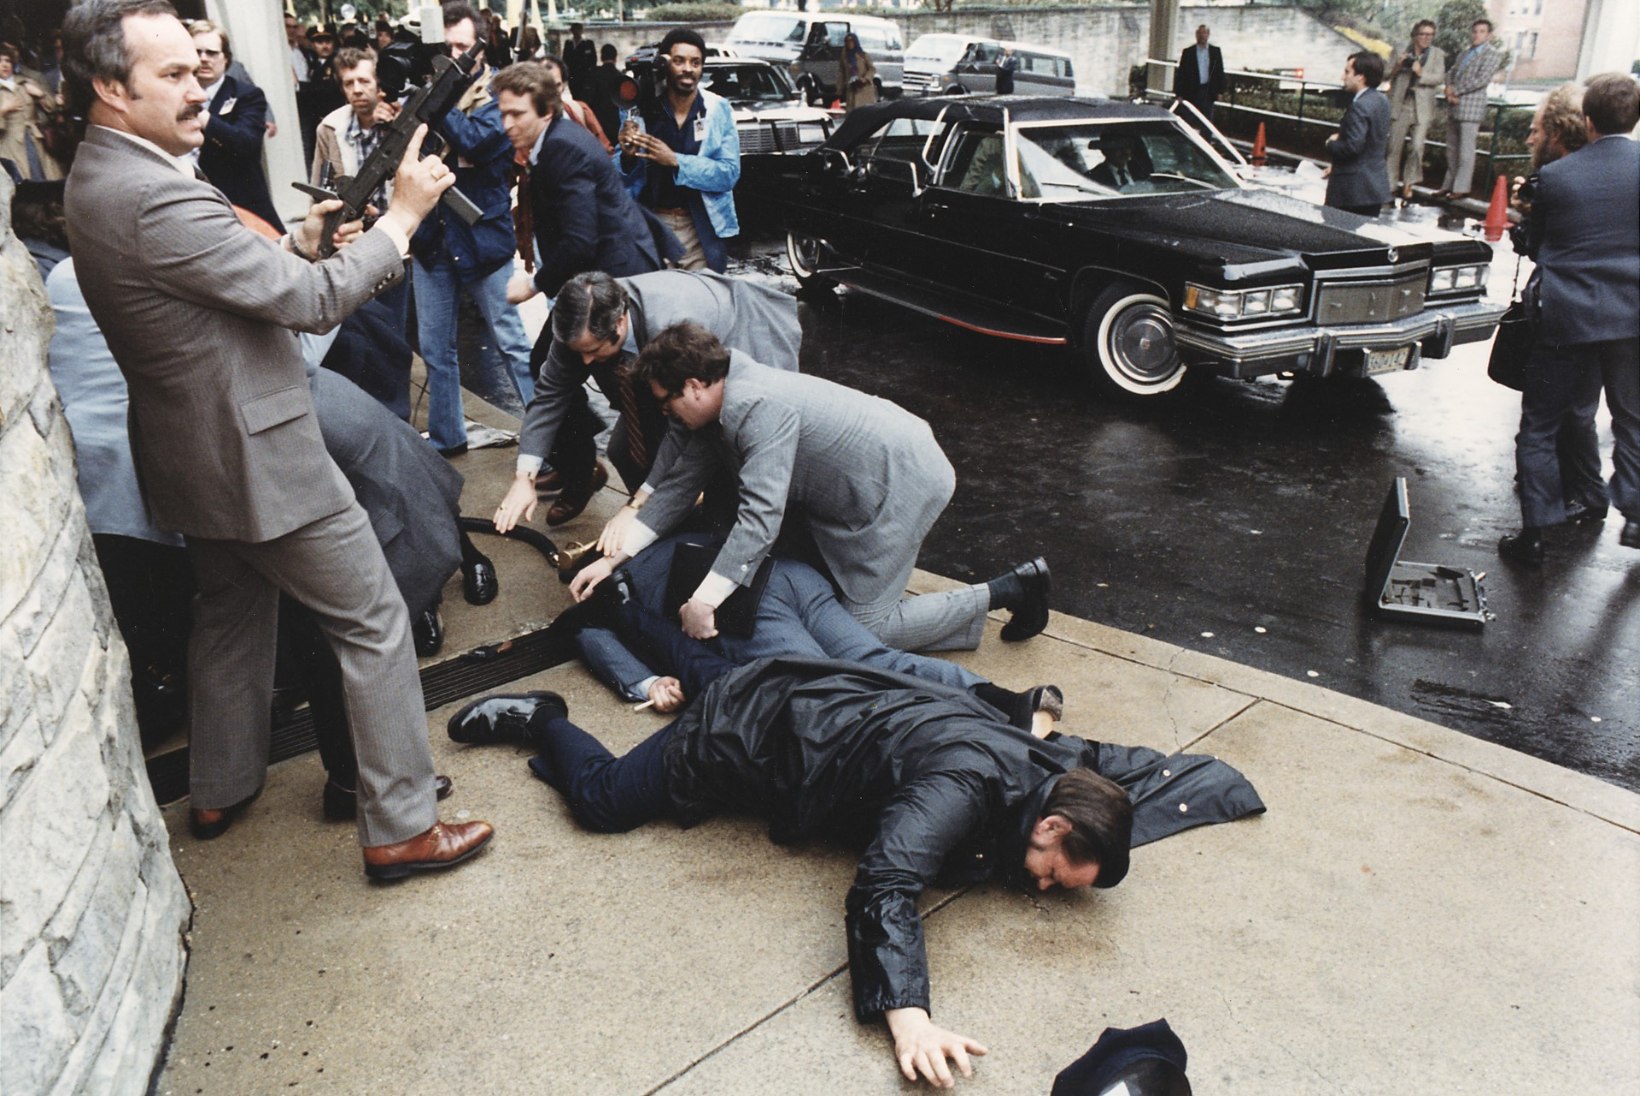 MENUFILMI EESKUJUL: Ronald Reaganit tulistanud mees üritas avaldada muljet Hollywoodi staarile